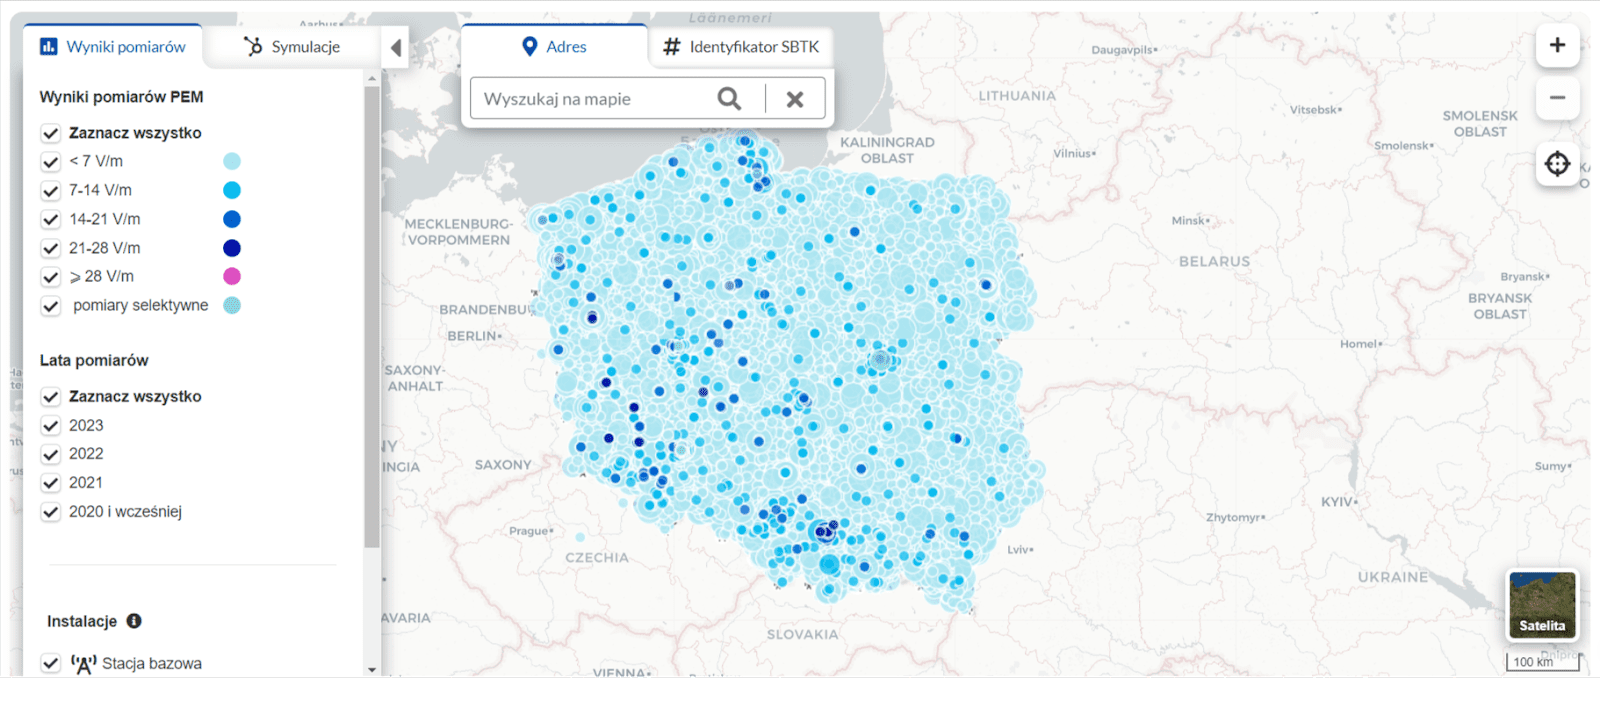 Zrzut ekranu z mapy na stronie si2pem.gov.pl. Na stronie widać pomiary wykonywane w Polsce. W większości miejsc wartość nie przekracza 7 V/m.